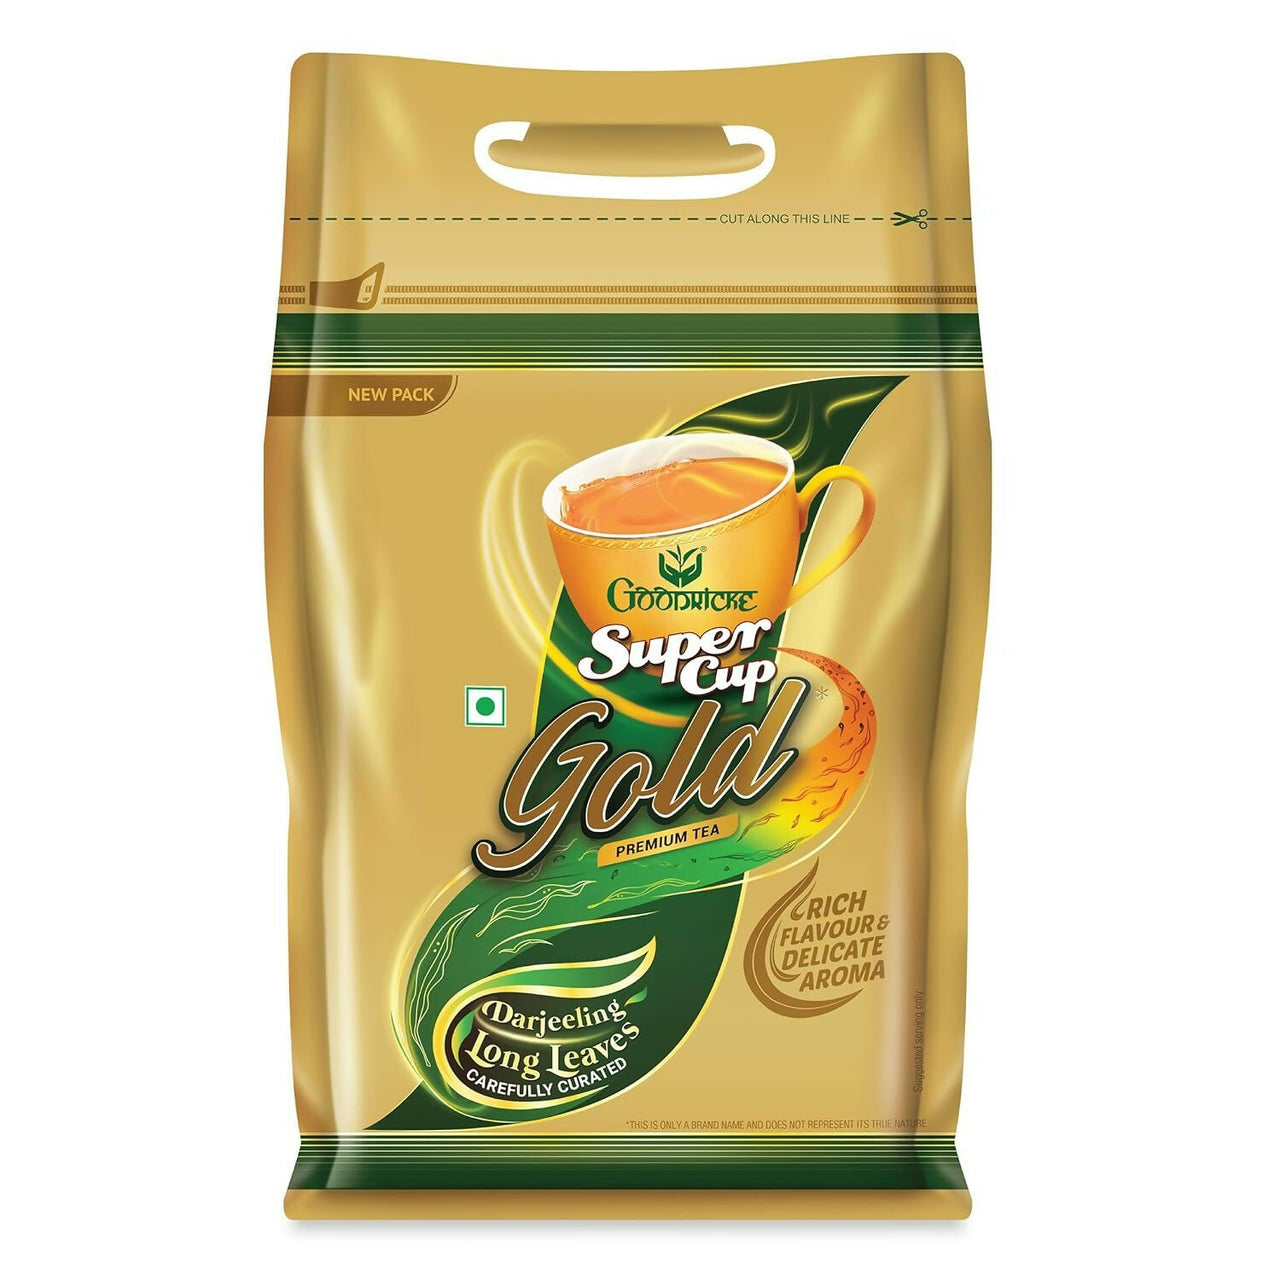 Goodricke Super Cup Gold Darjeeling & Assam Tea - Distacart